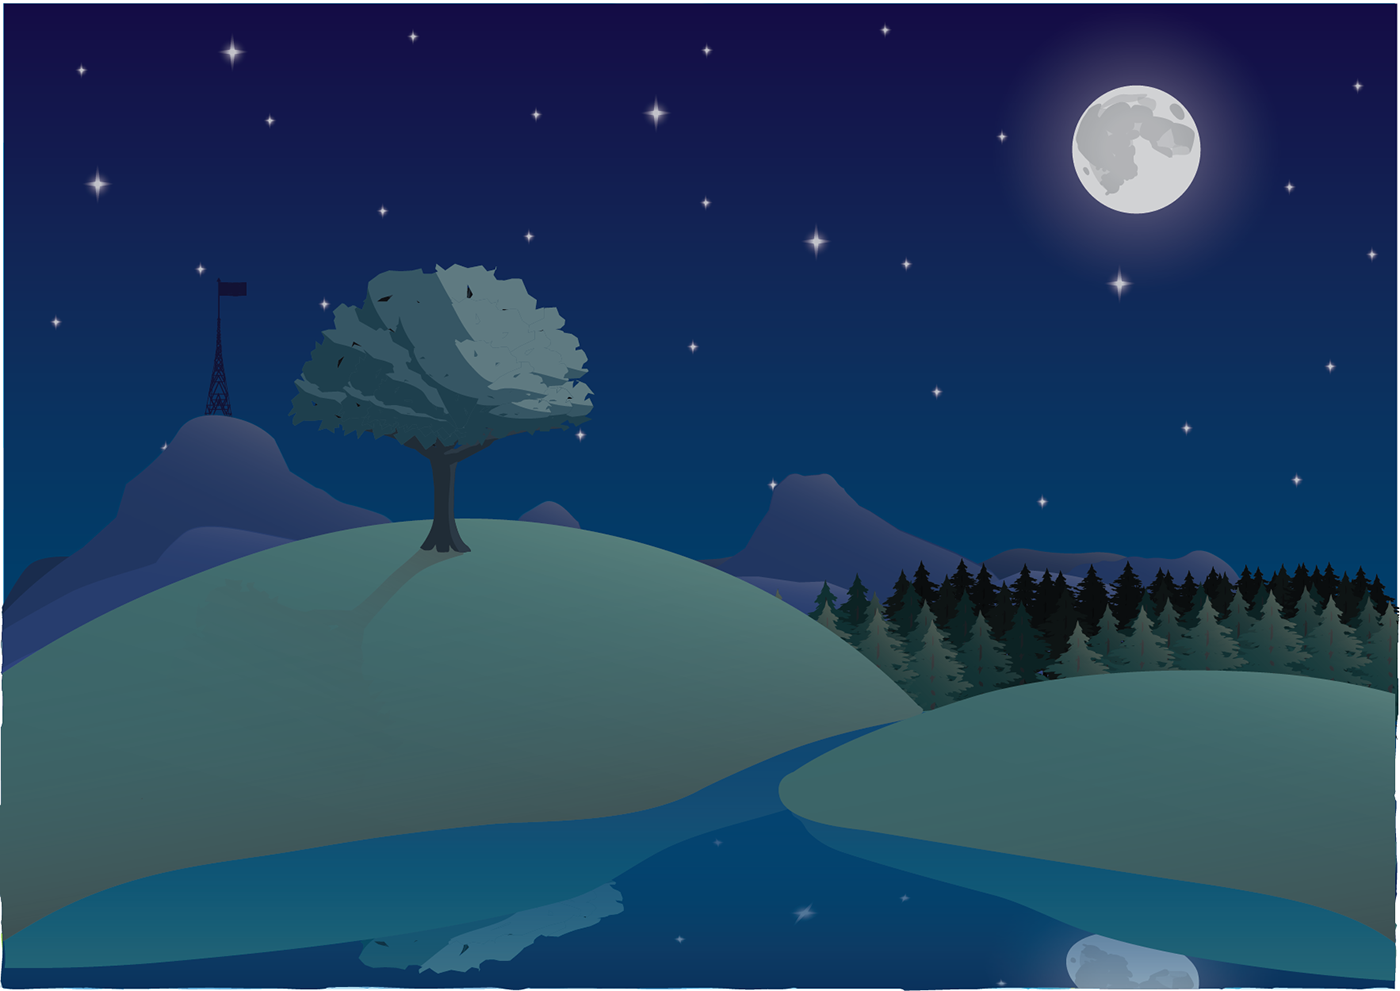 Image may contain: moon, screenshot and cartoon